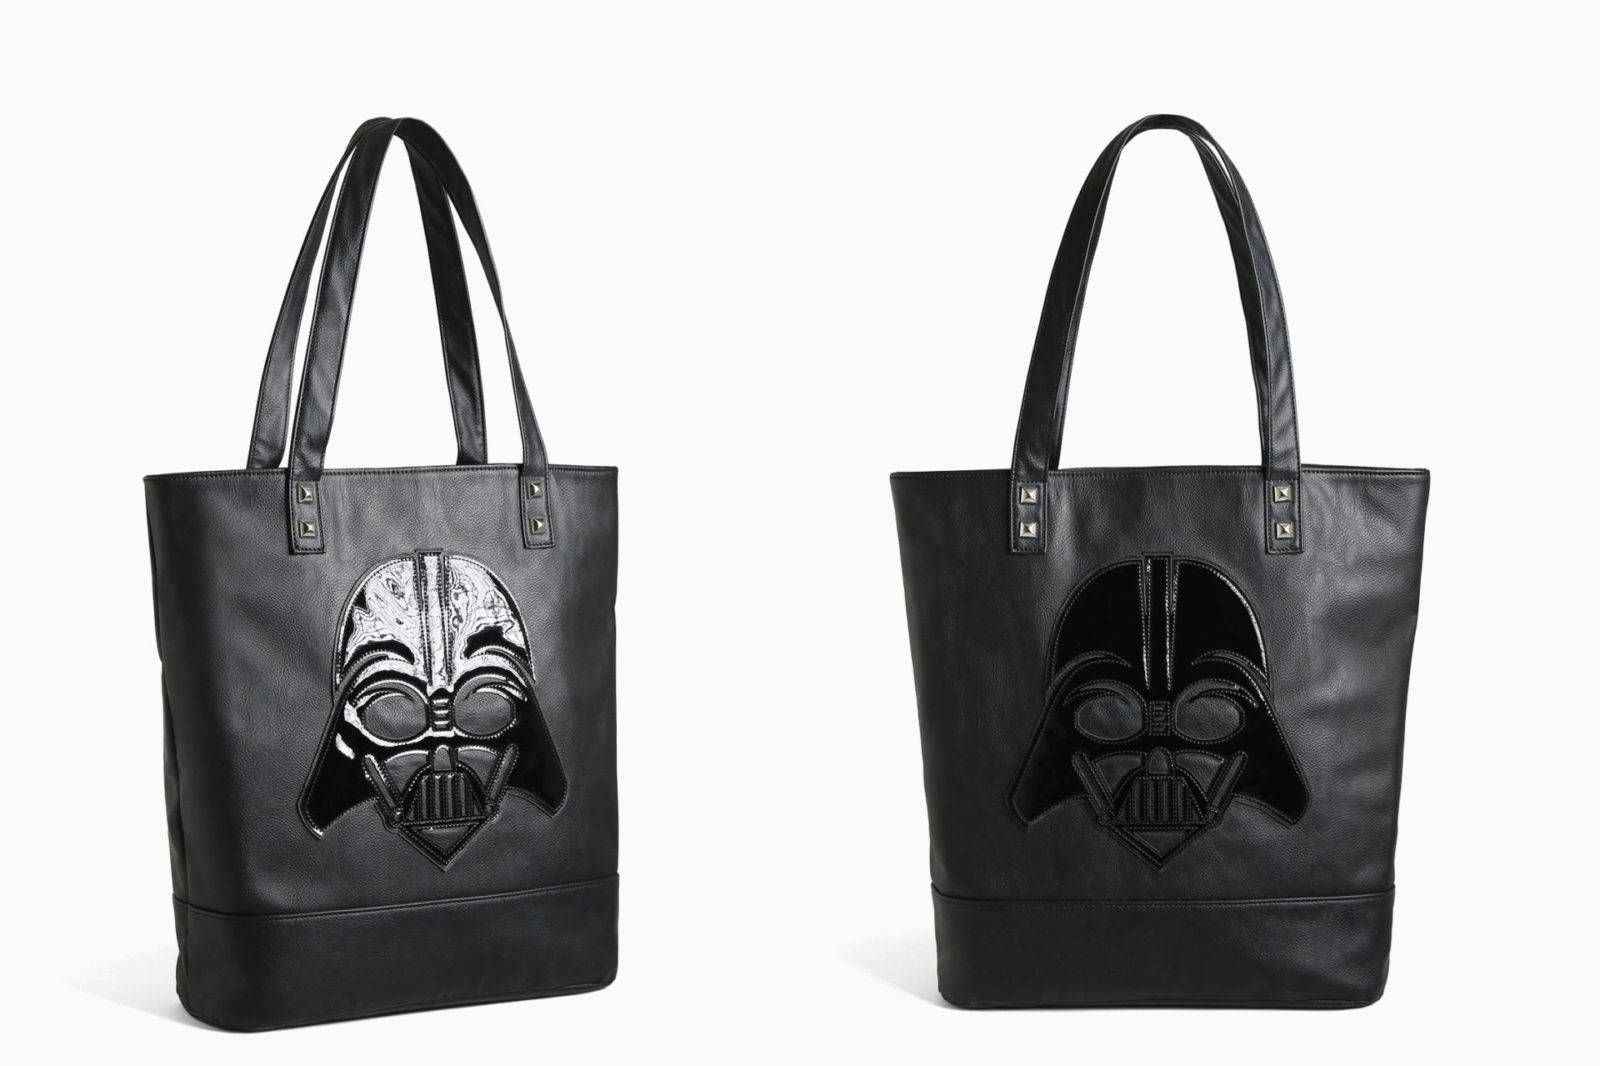 New Darth Vader tote bag at Torrid